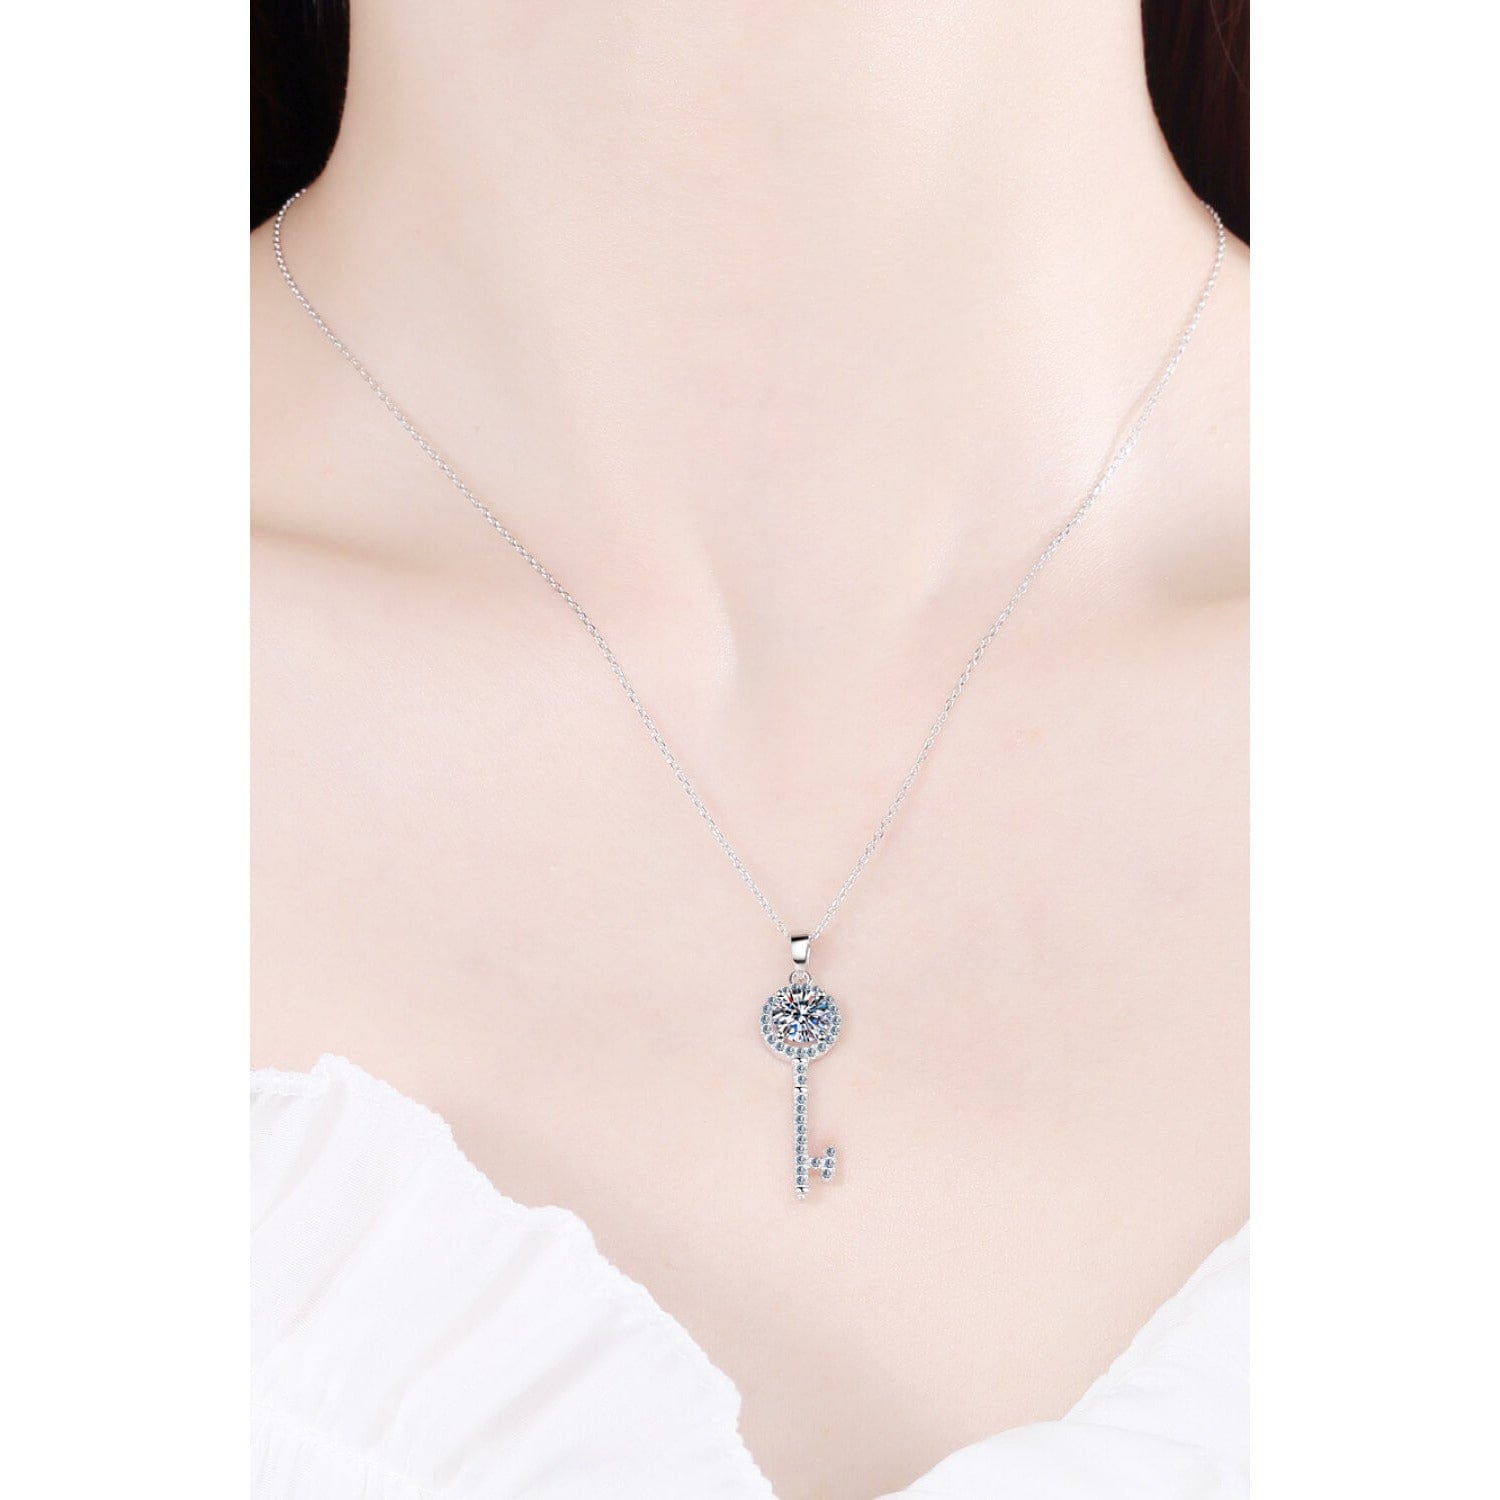 Moissanite Key Pendant Necklace - Body By J'ne